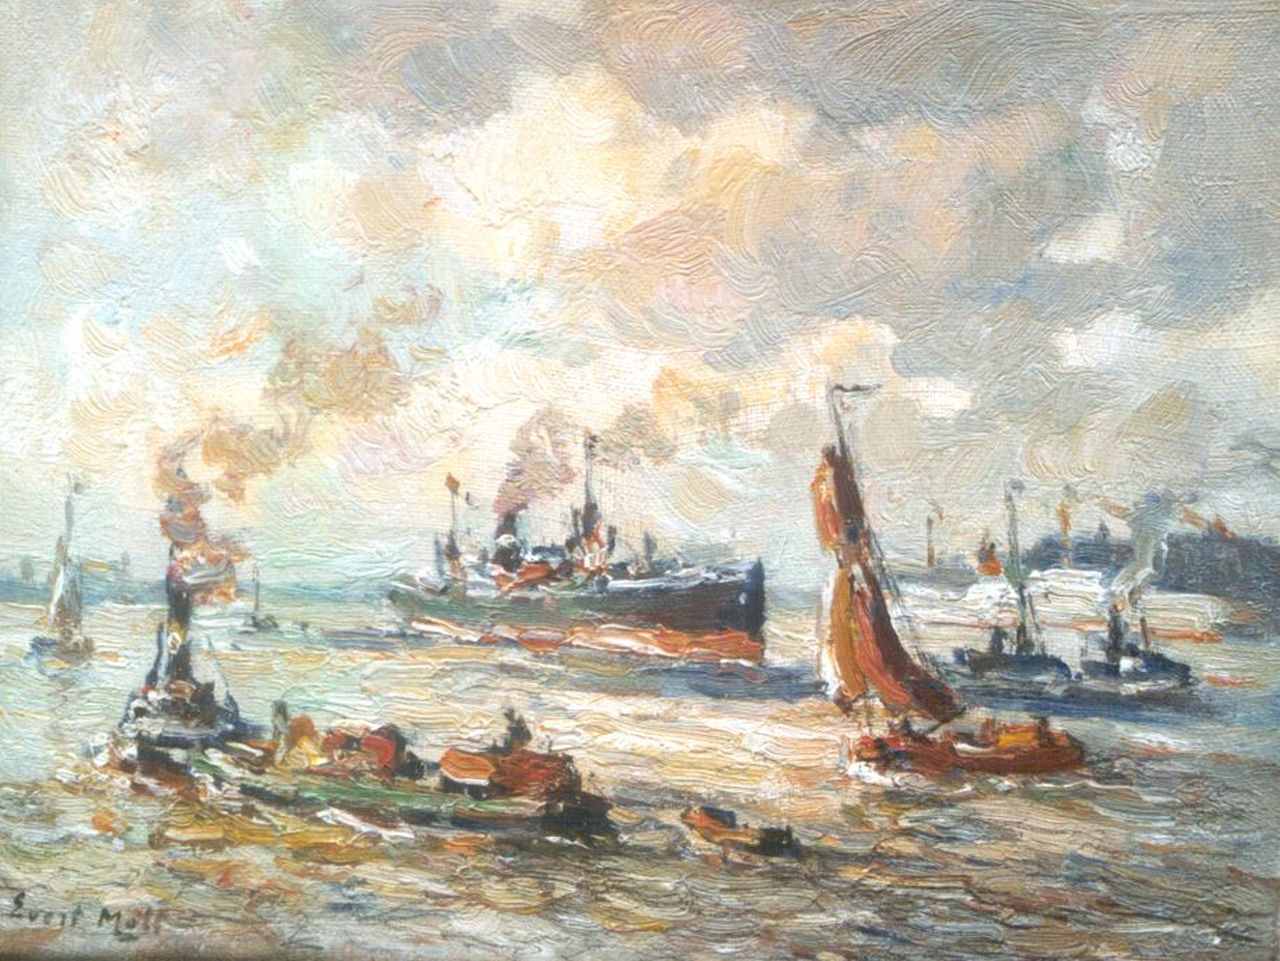 Moll E.  | Evert Moll, Schepen in de haven van Rotterdam, olieverf op doek 19,3 x 25,4 cm, gesigneerd linksonder